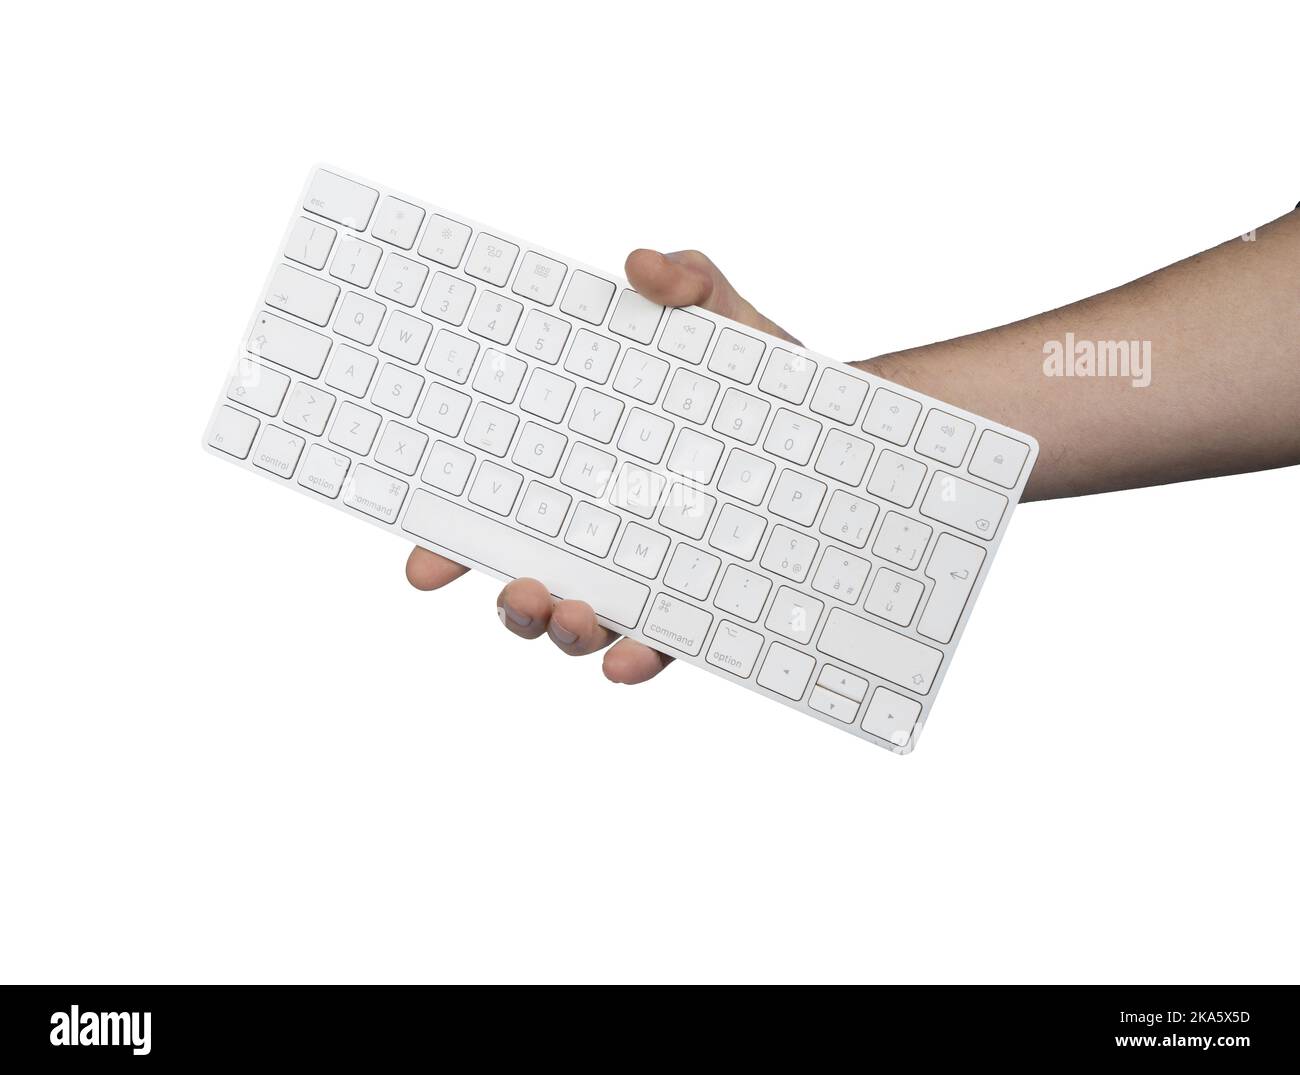 un clavier dans une main mâle sur un fond transparent Banque D'Images